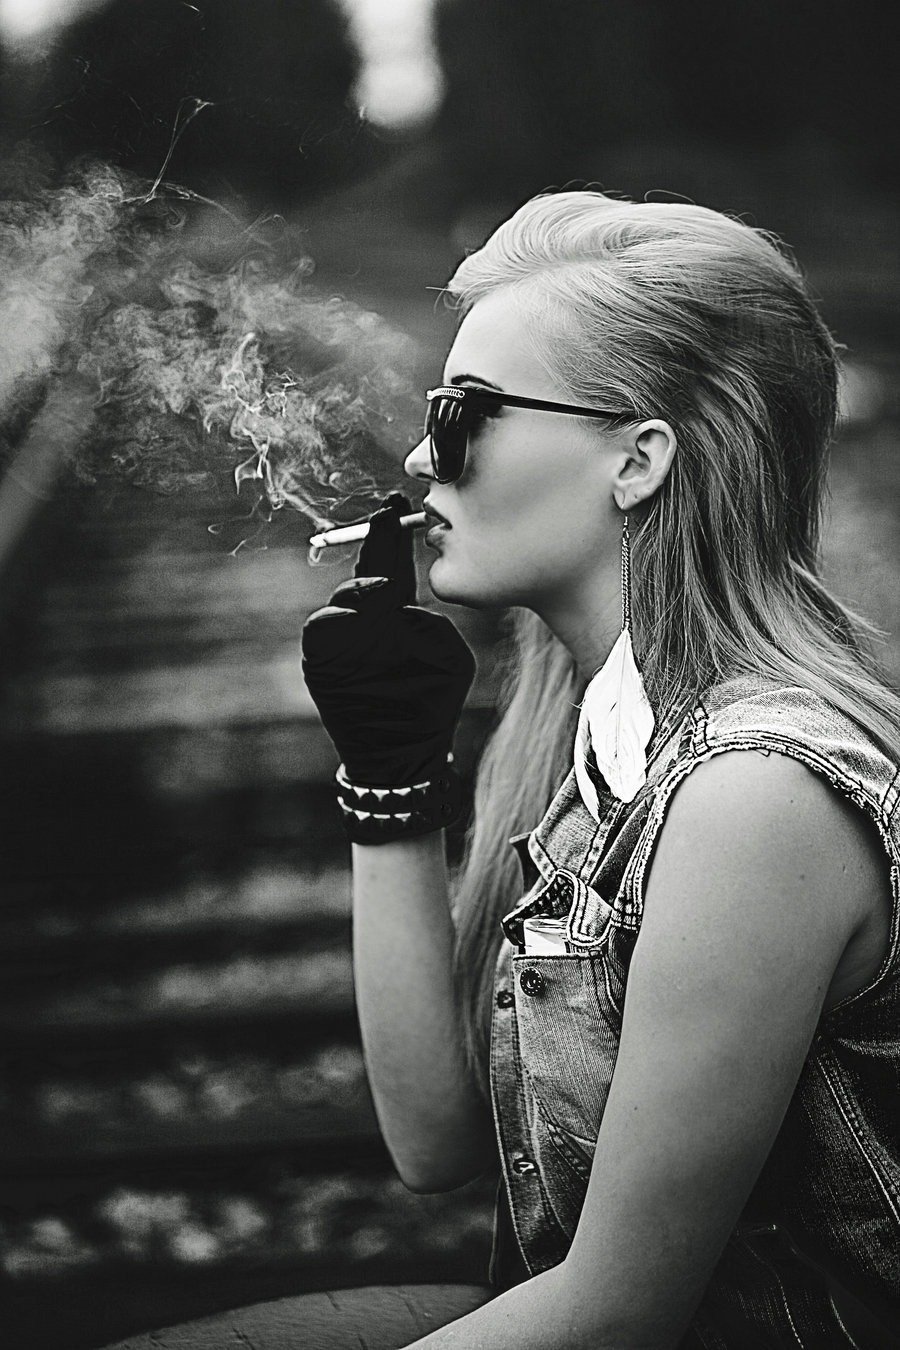 Изображения по запросу Девушка курит